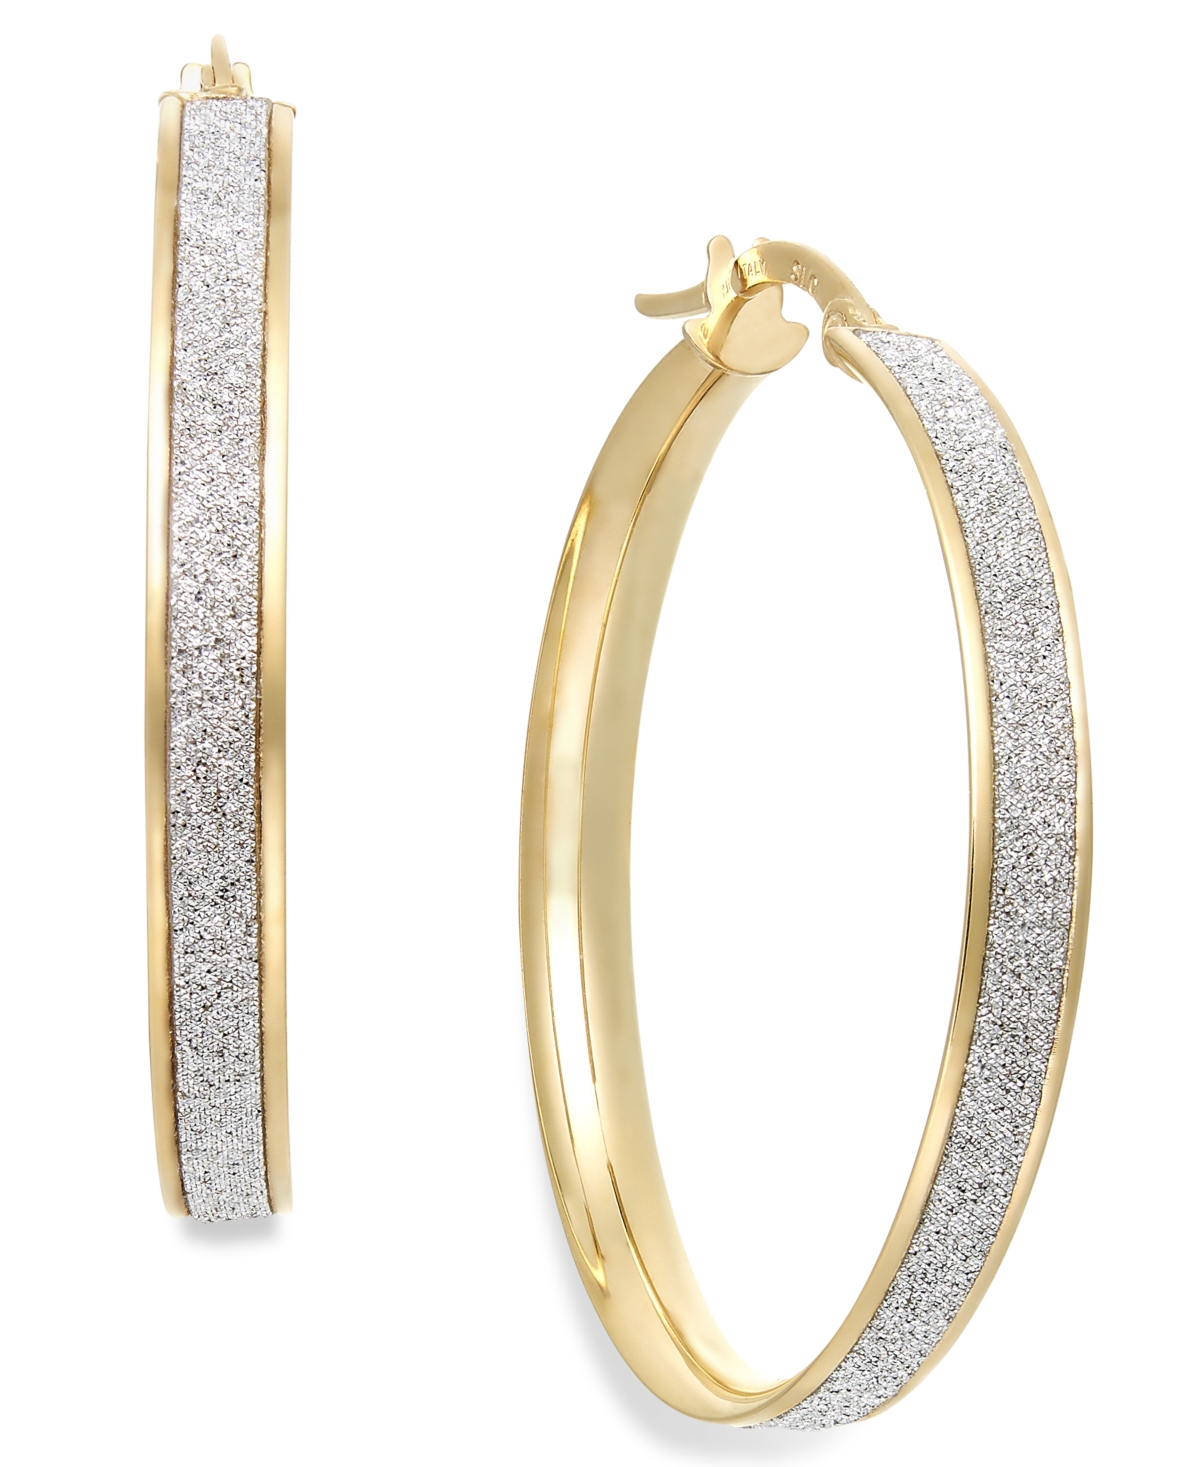 Glitter Hoop Earrings in 14k Gold (30mm) - Yellow Gold